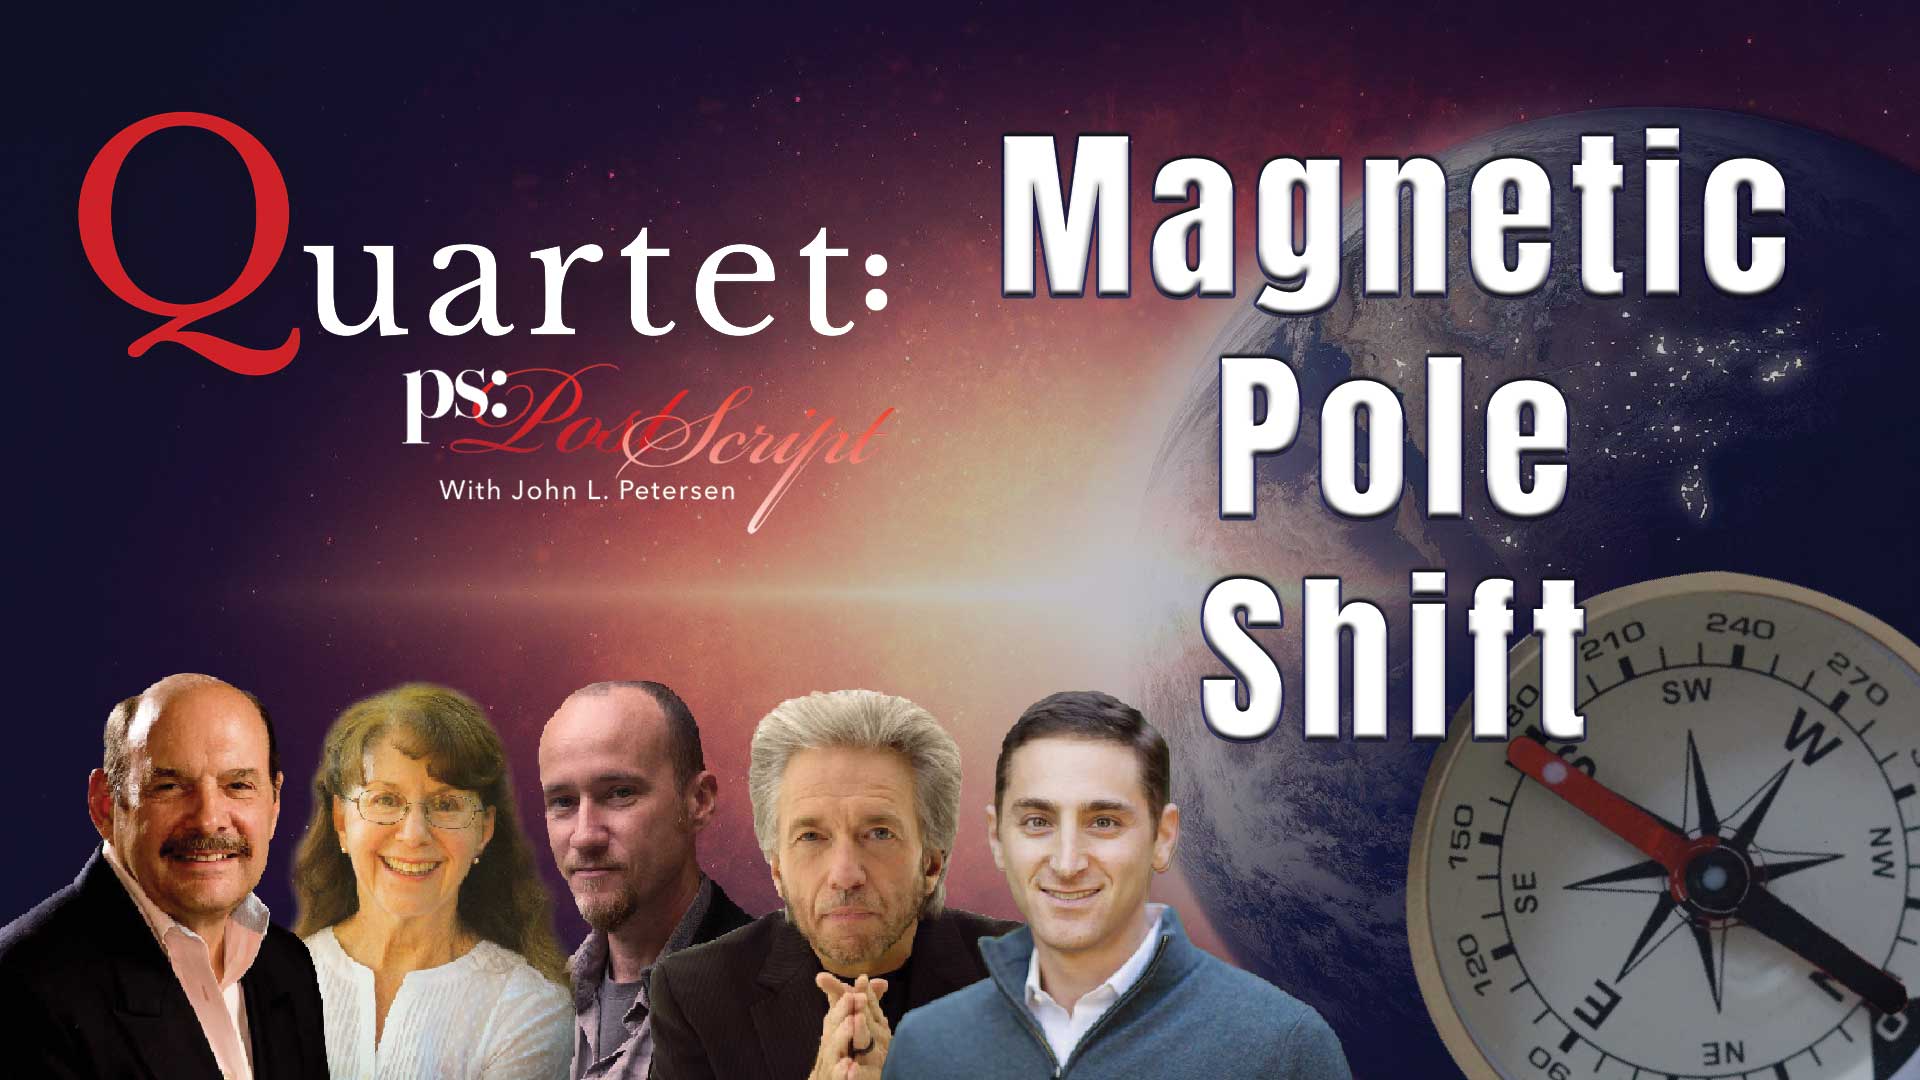 Quartet - Magnetic Pole Shift